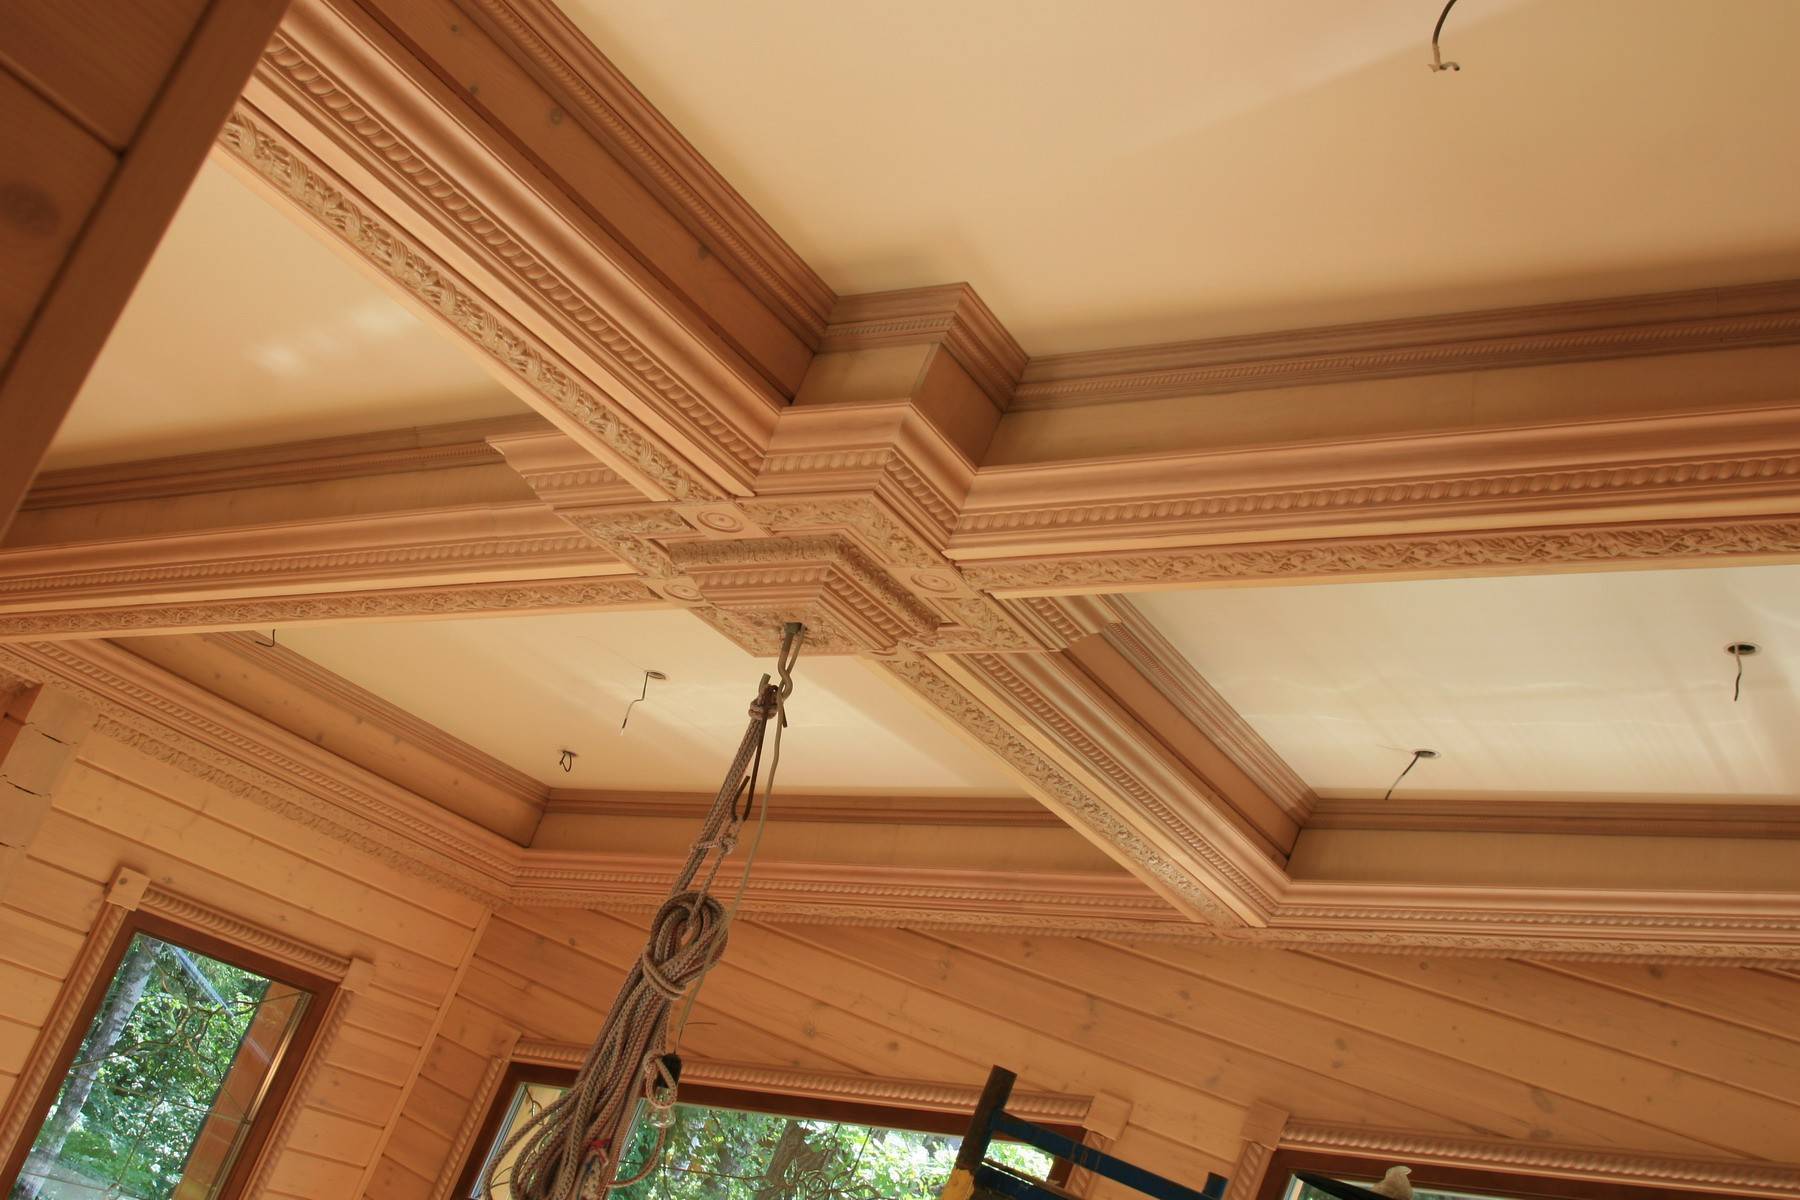 Потолок своими руками в частном доме: варианты, как лучше сделать деревянный или бетонный, правильно утеплить минватой или иным материалом и обшить